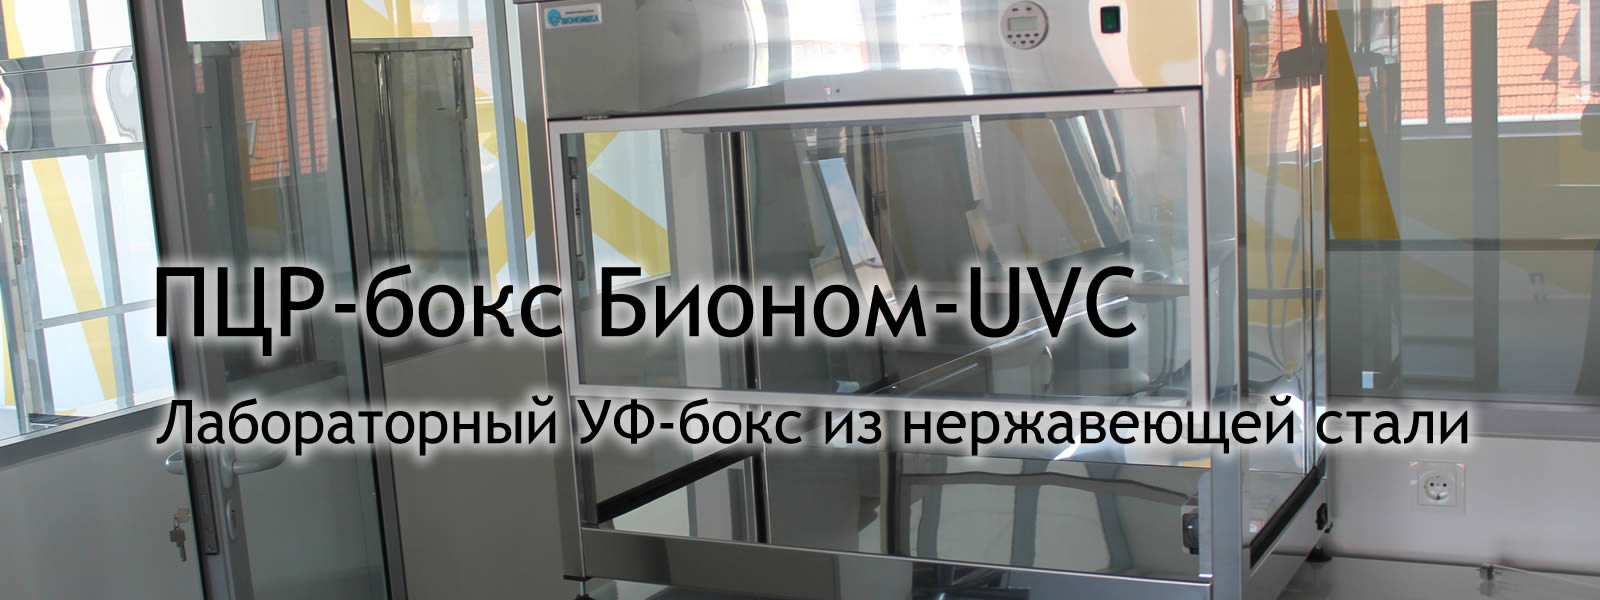 ПЦР-бокс Бионом-UVC